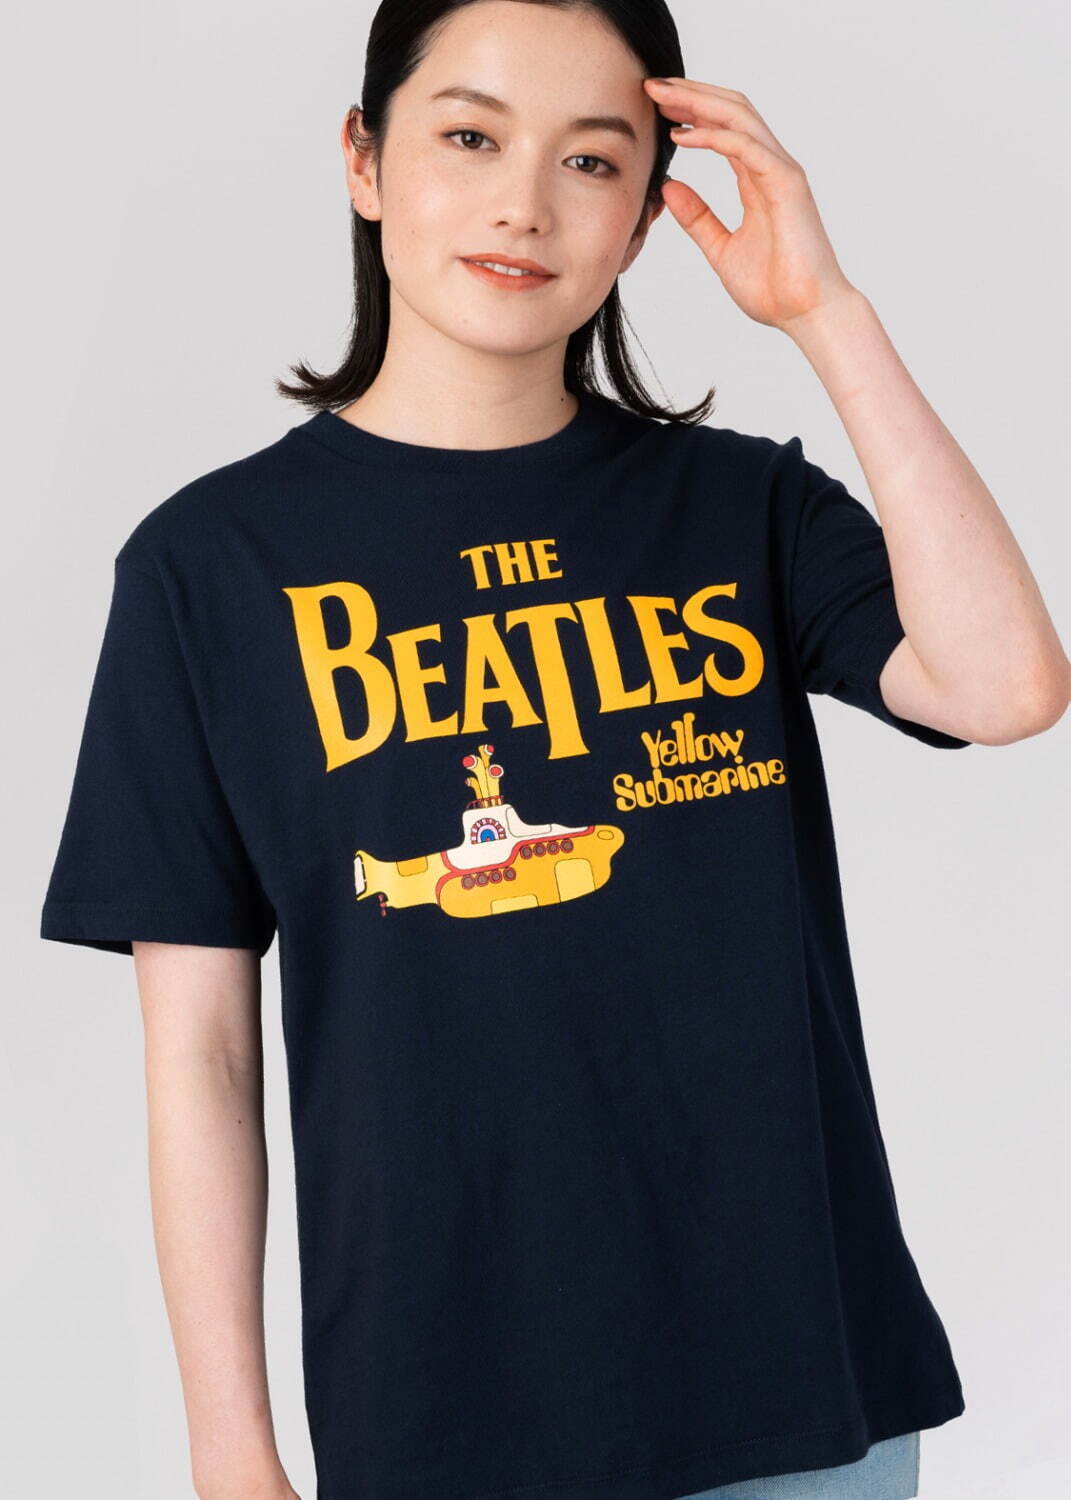 Tシャツ「ザ・ビートルズ ロゴ＆イエロー・サブマリン」2,500円